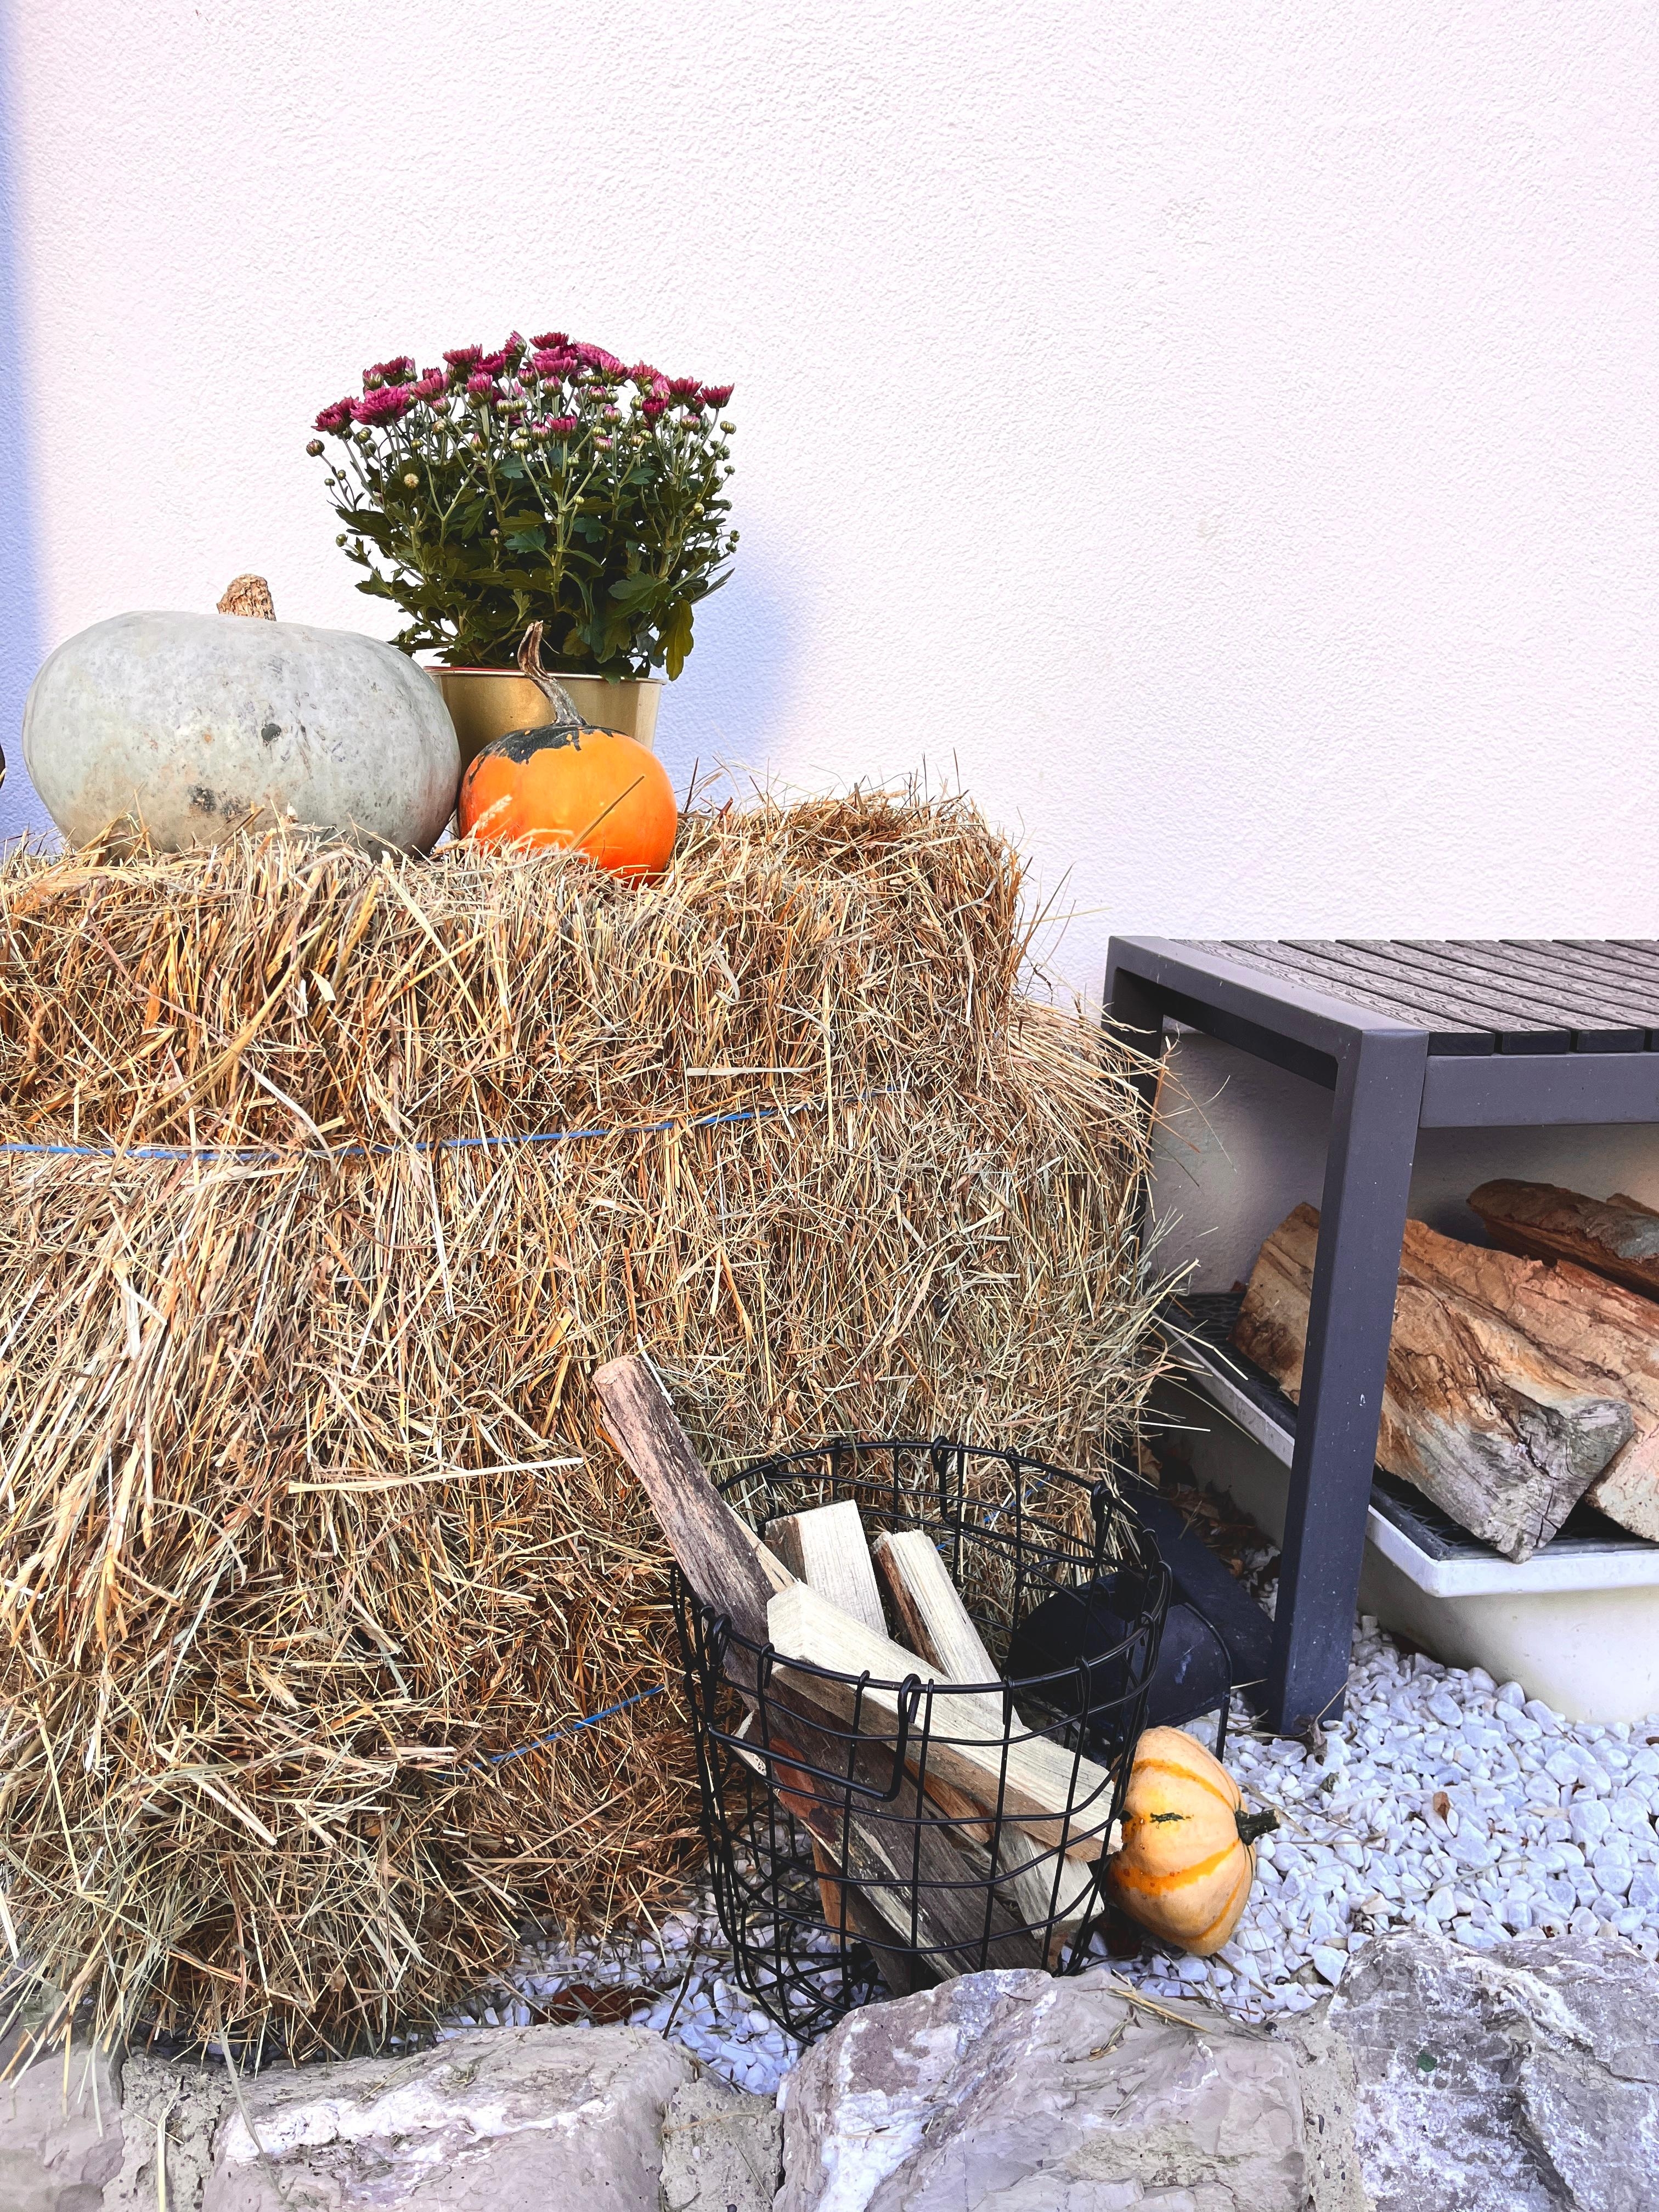 Pumpkin Season 🍁
#herbstdekoration#pumpkinseason#eingangsbereich#vorgarten#kürbisliebe#strohballen#outdoor#kürbis